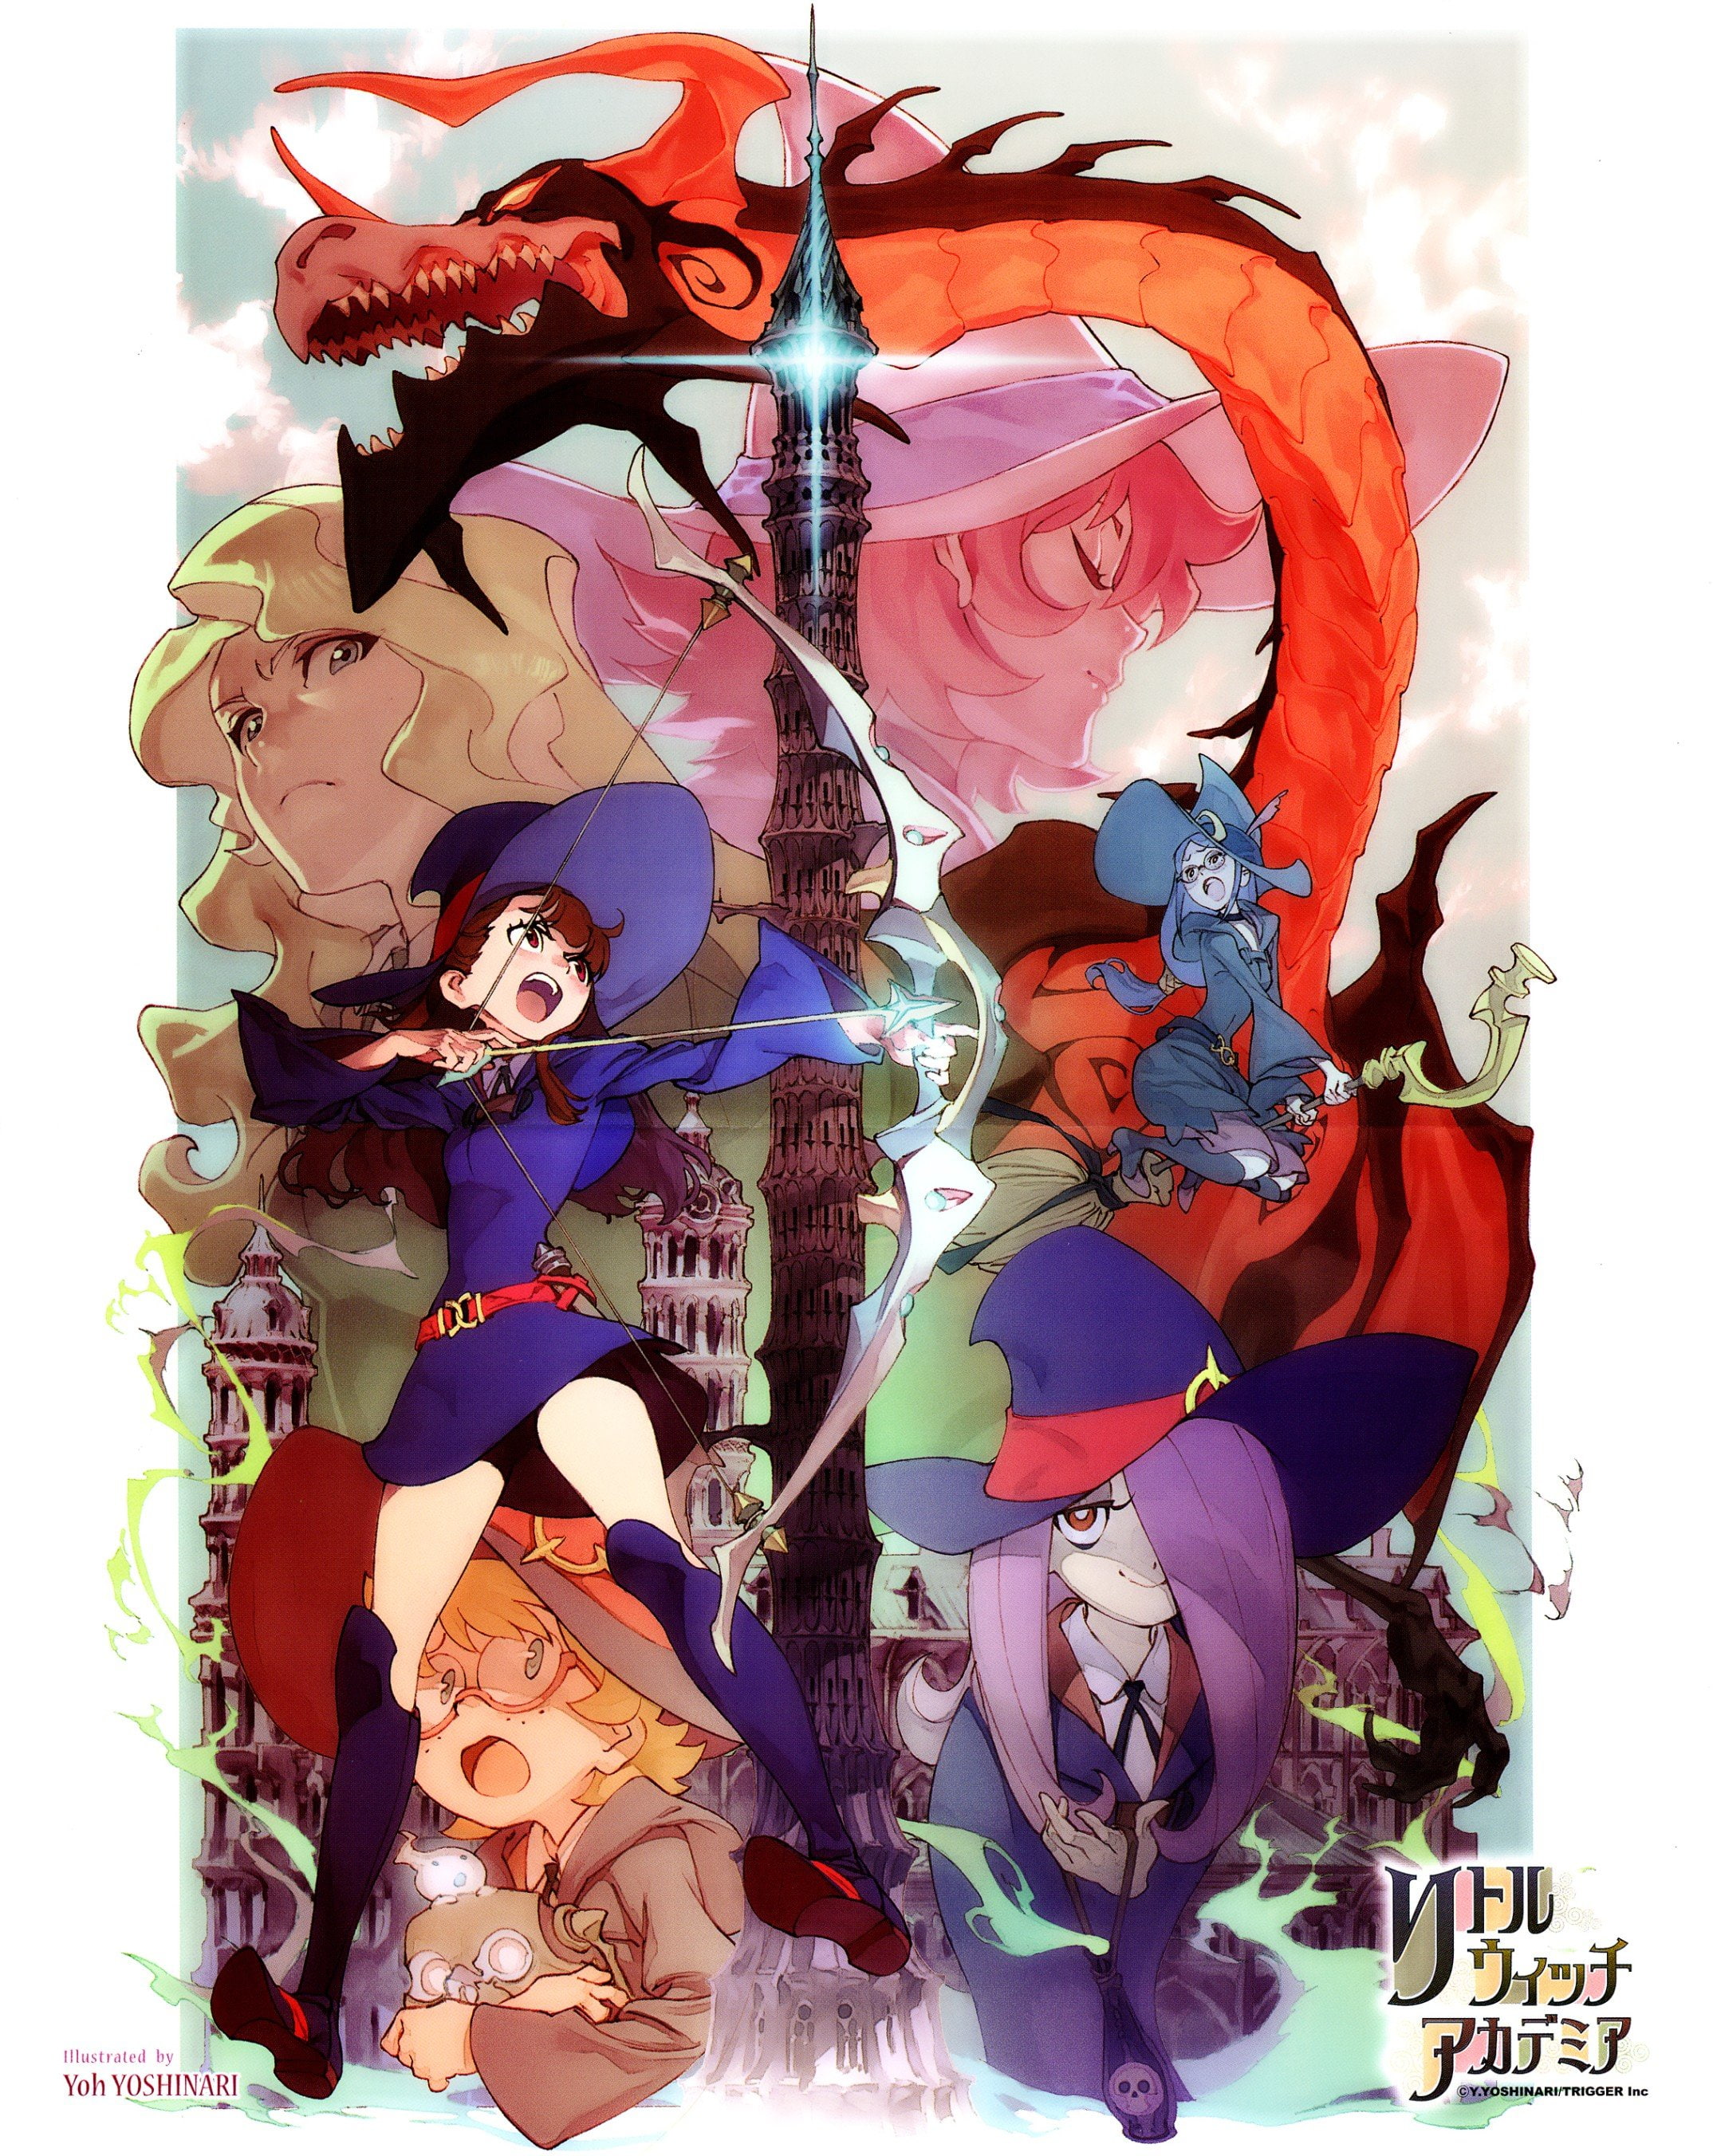 Anime Girls, artwork, Kagari Akko, Little Witch Academia, Manbavaran Sucy